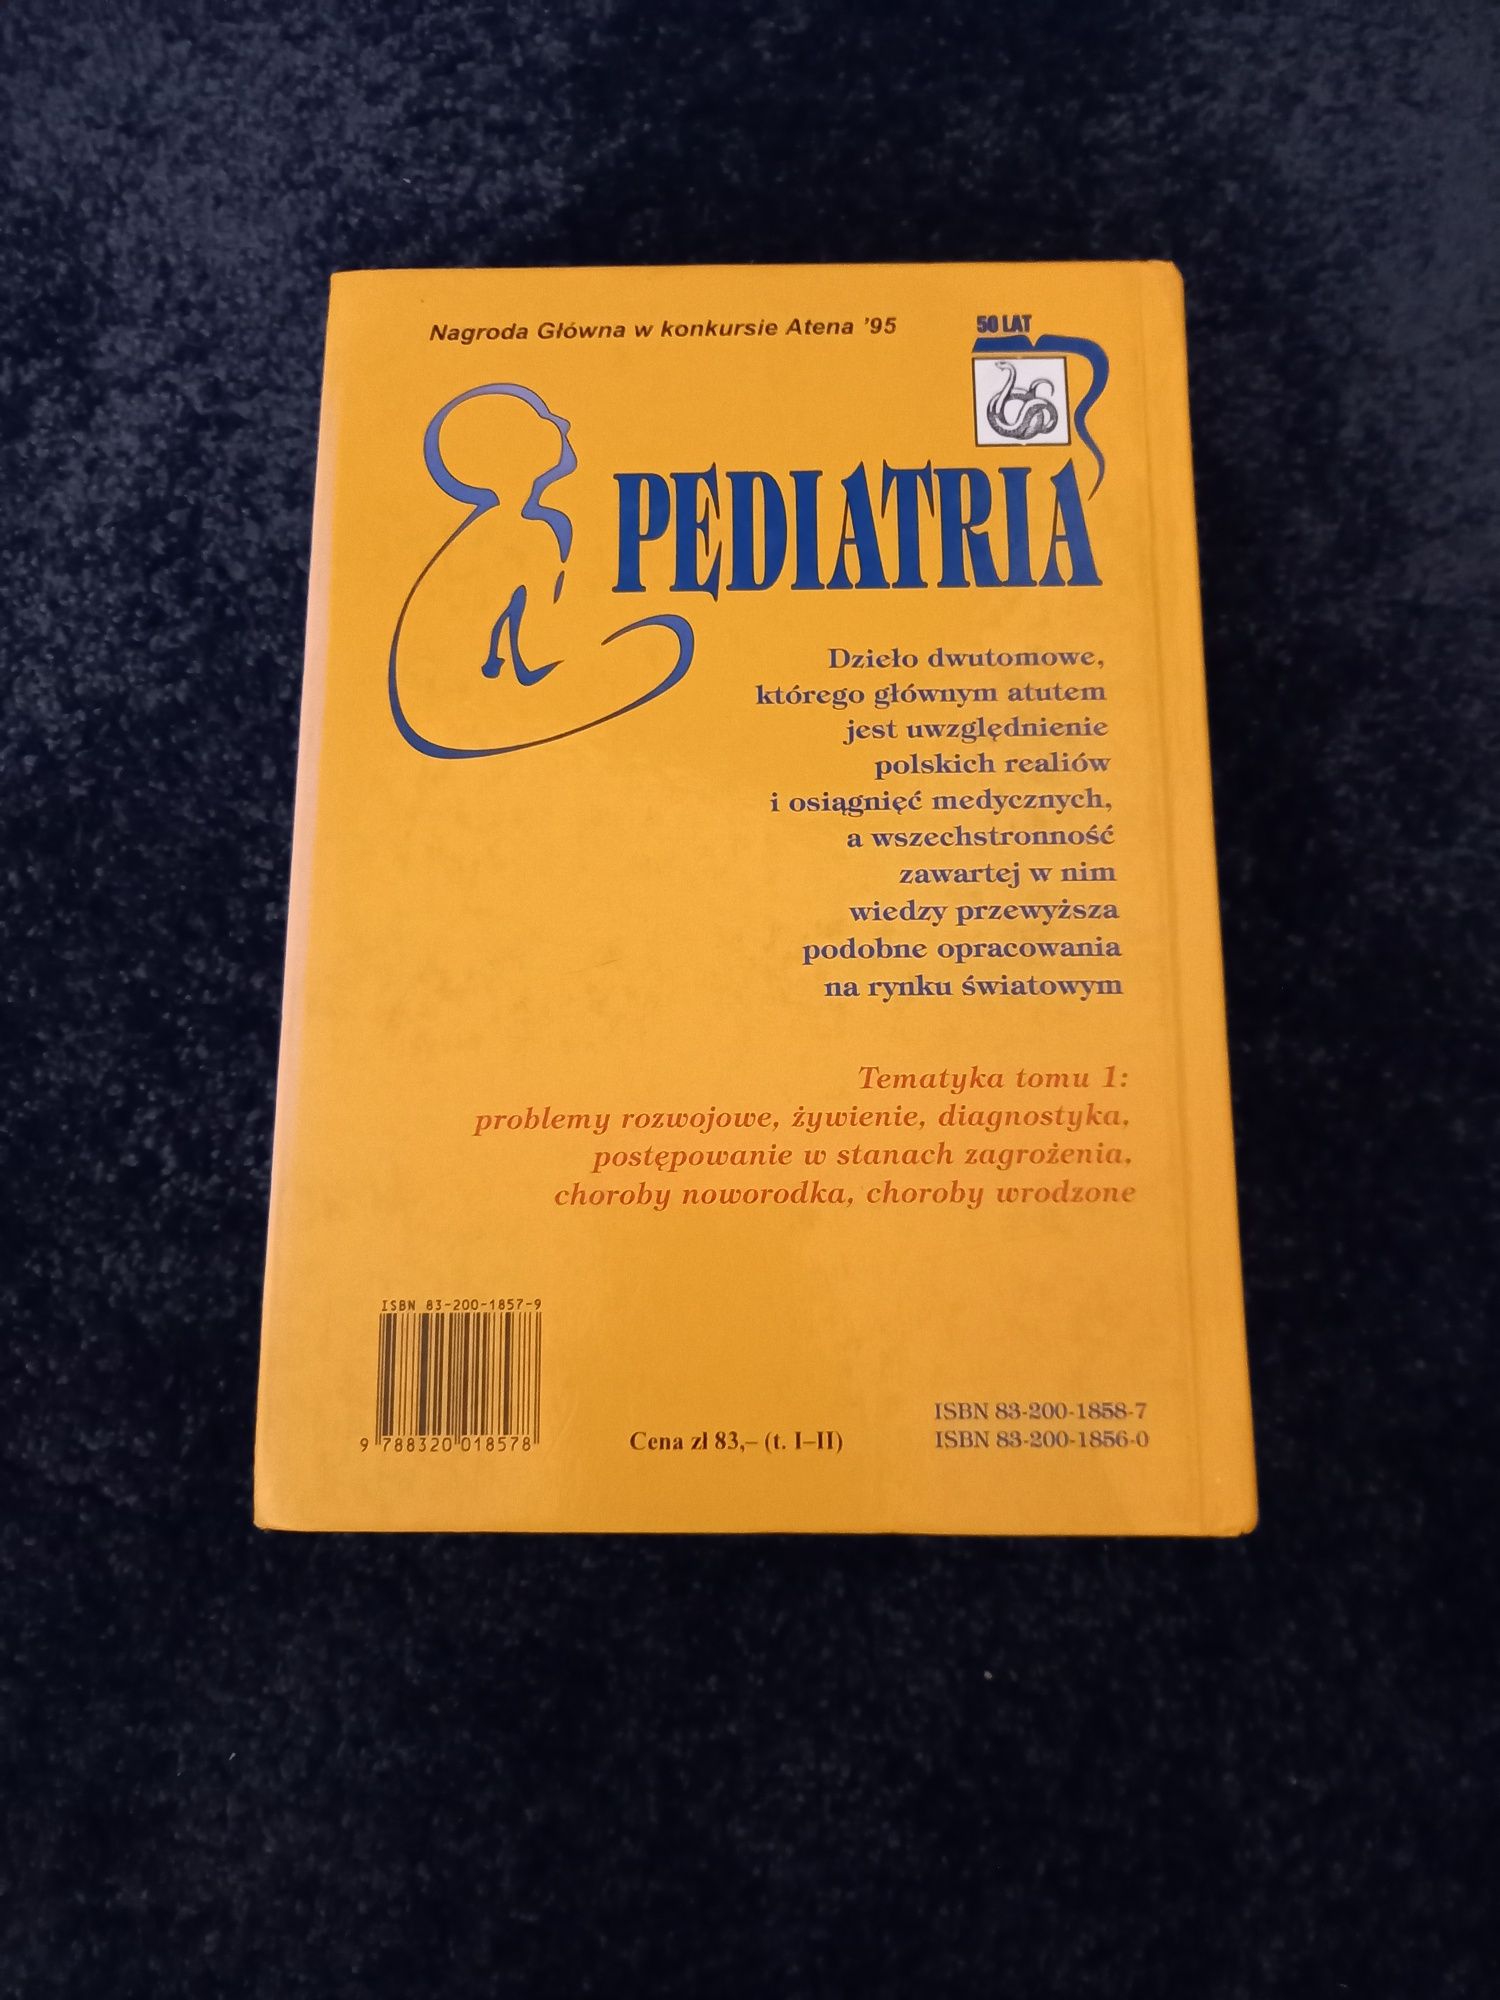 Pediatria tom 1 i 2, Bolesław Górnicki, Barbara Dębiec,Jan Baszczyński